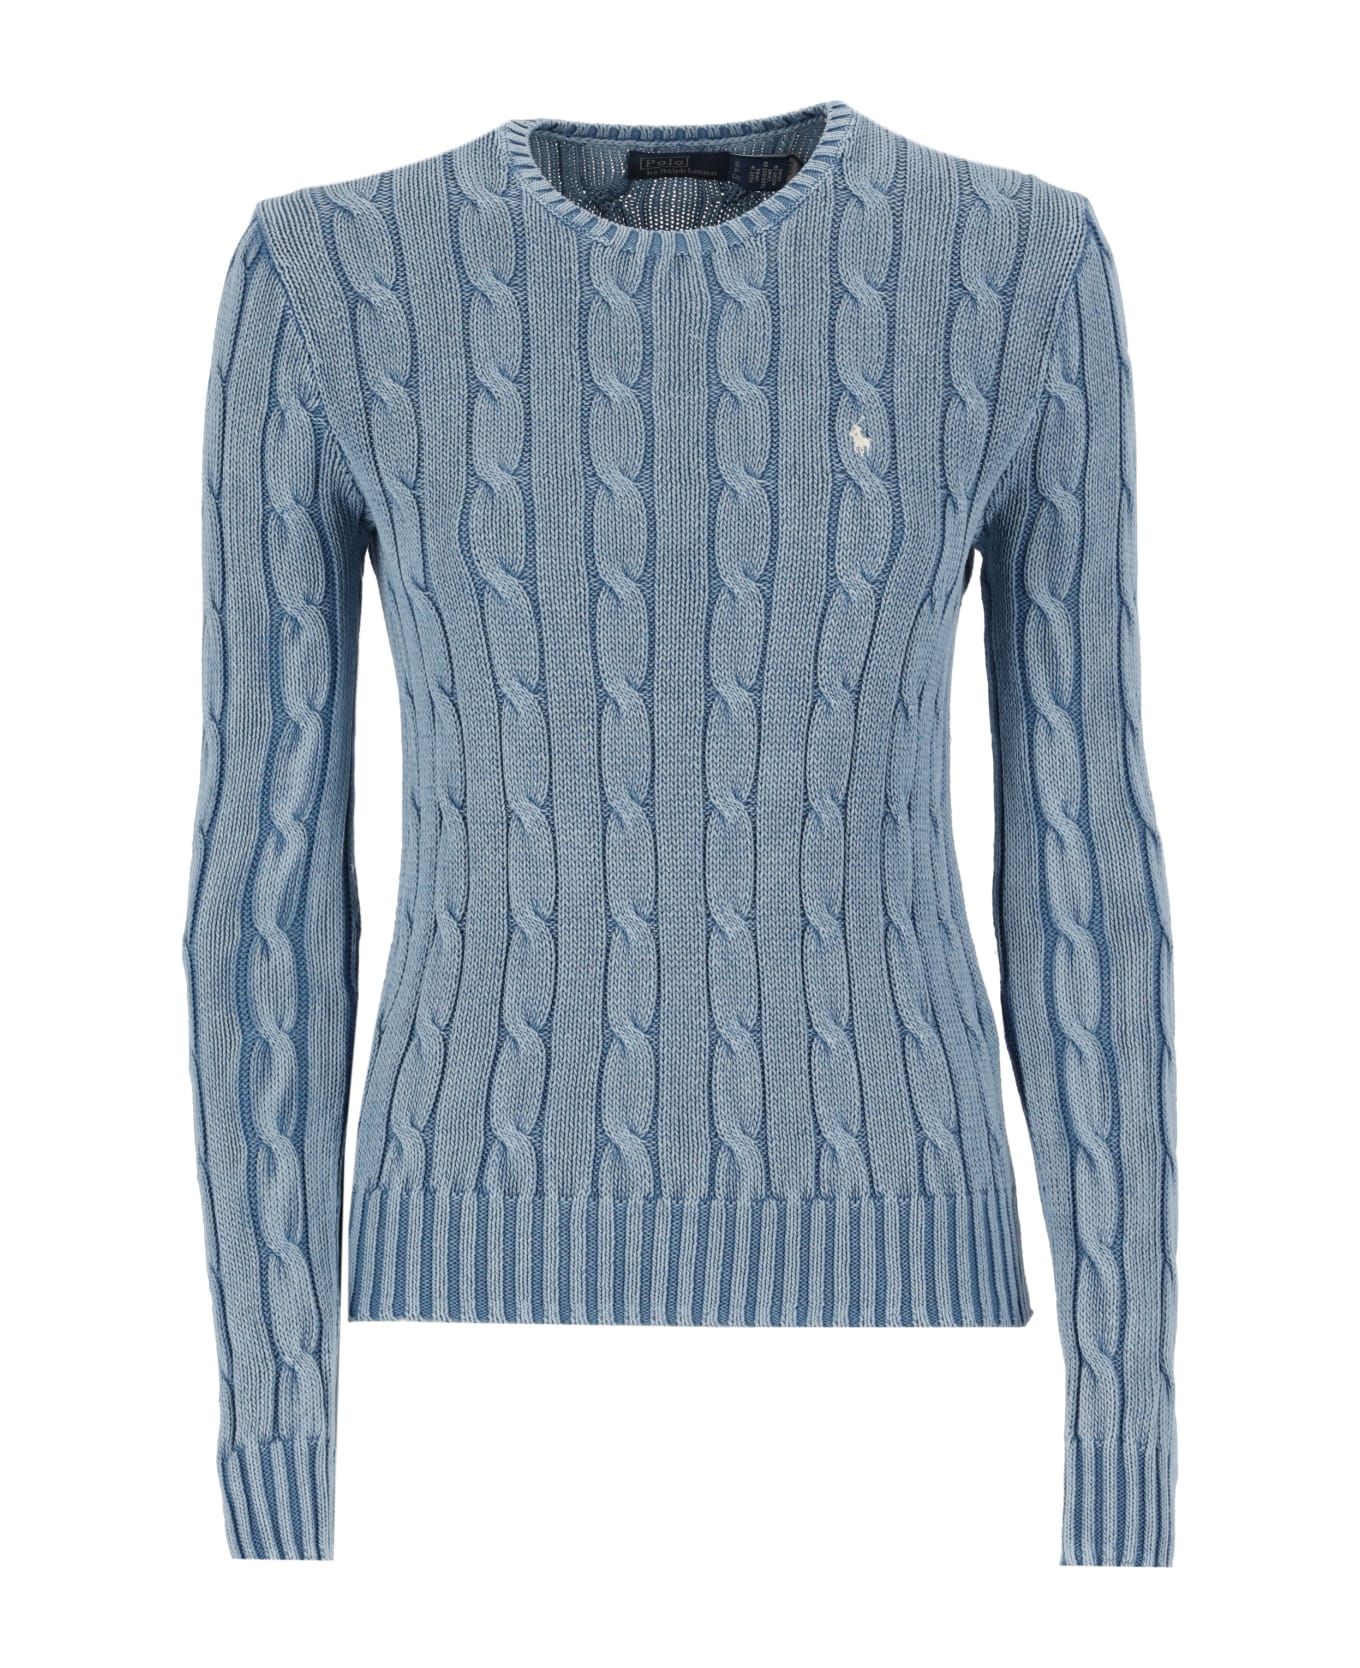 Polo Ralph Lauren Julianna Sweater - Light Blue